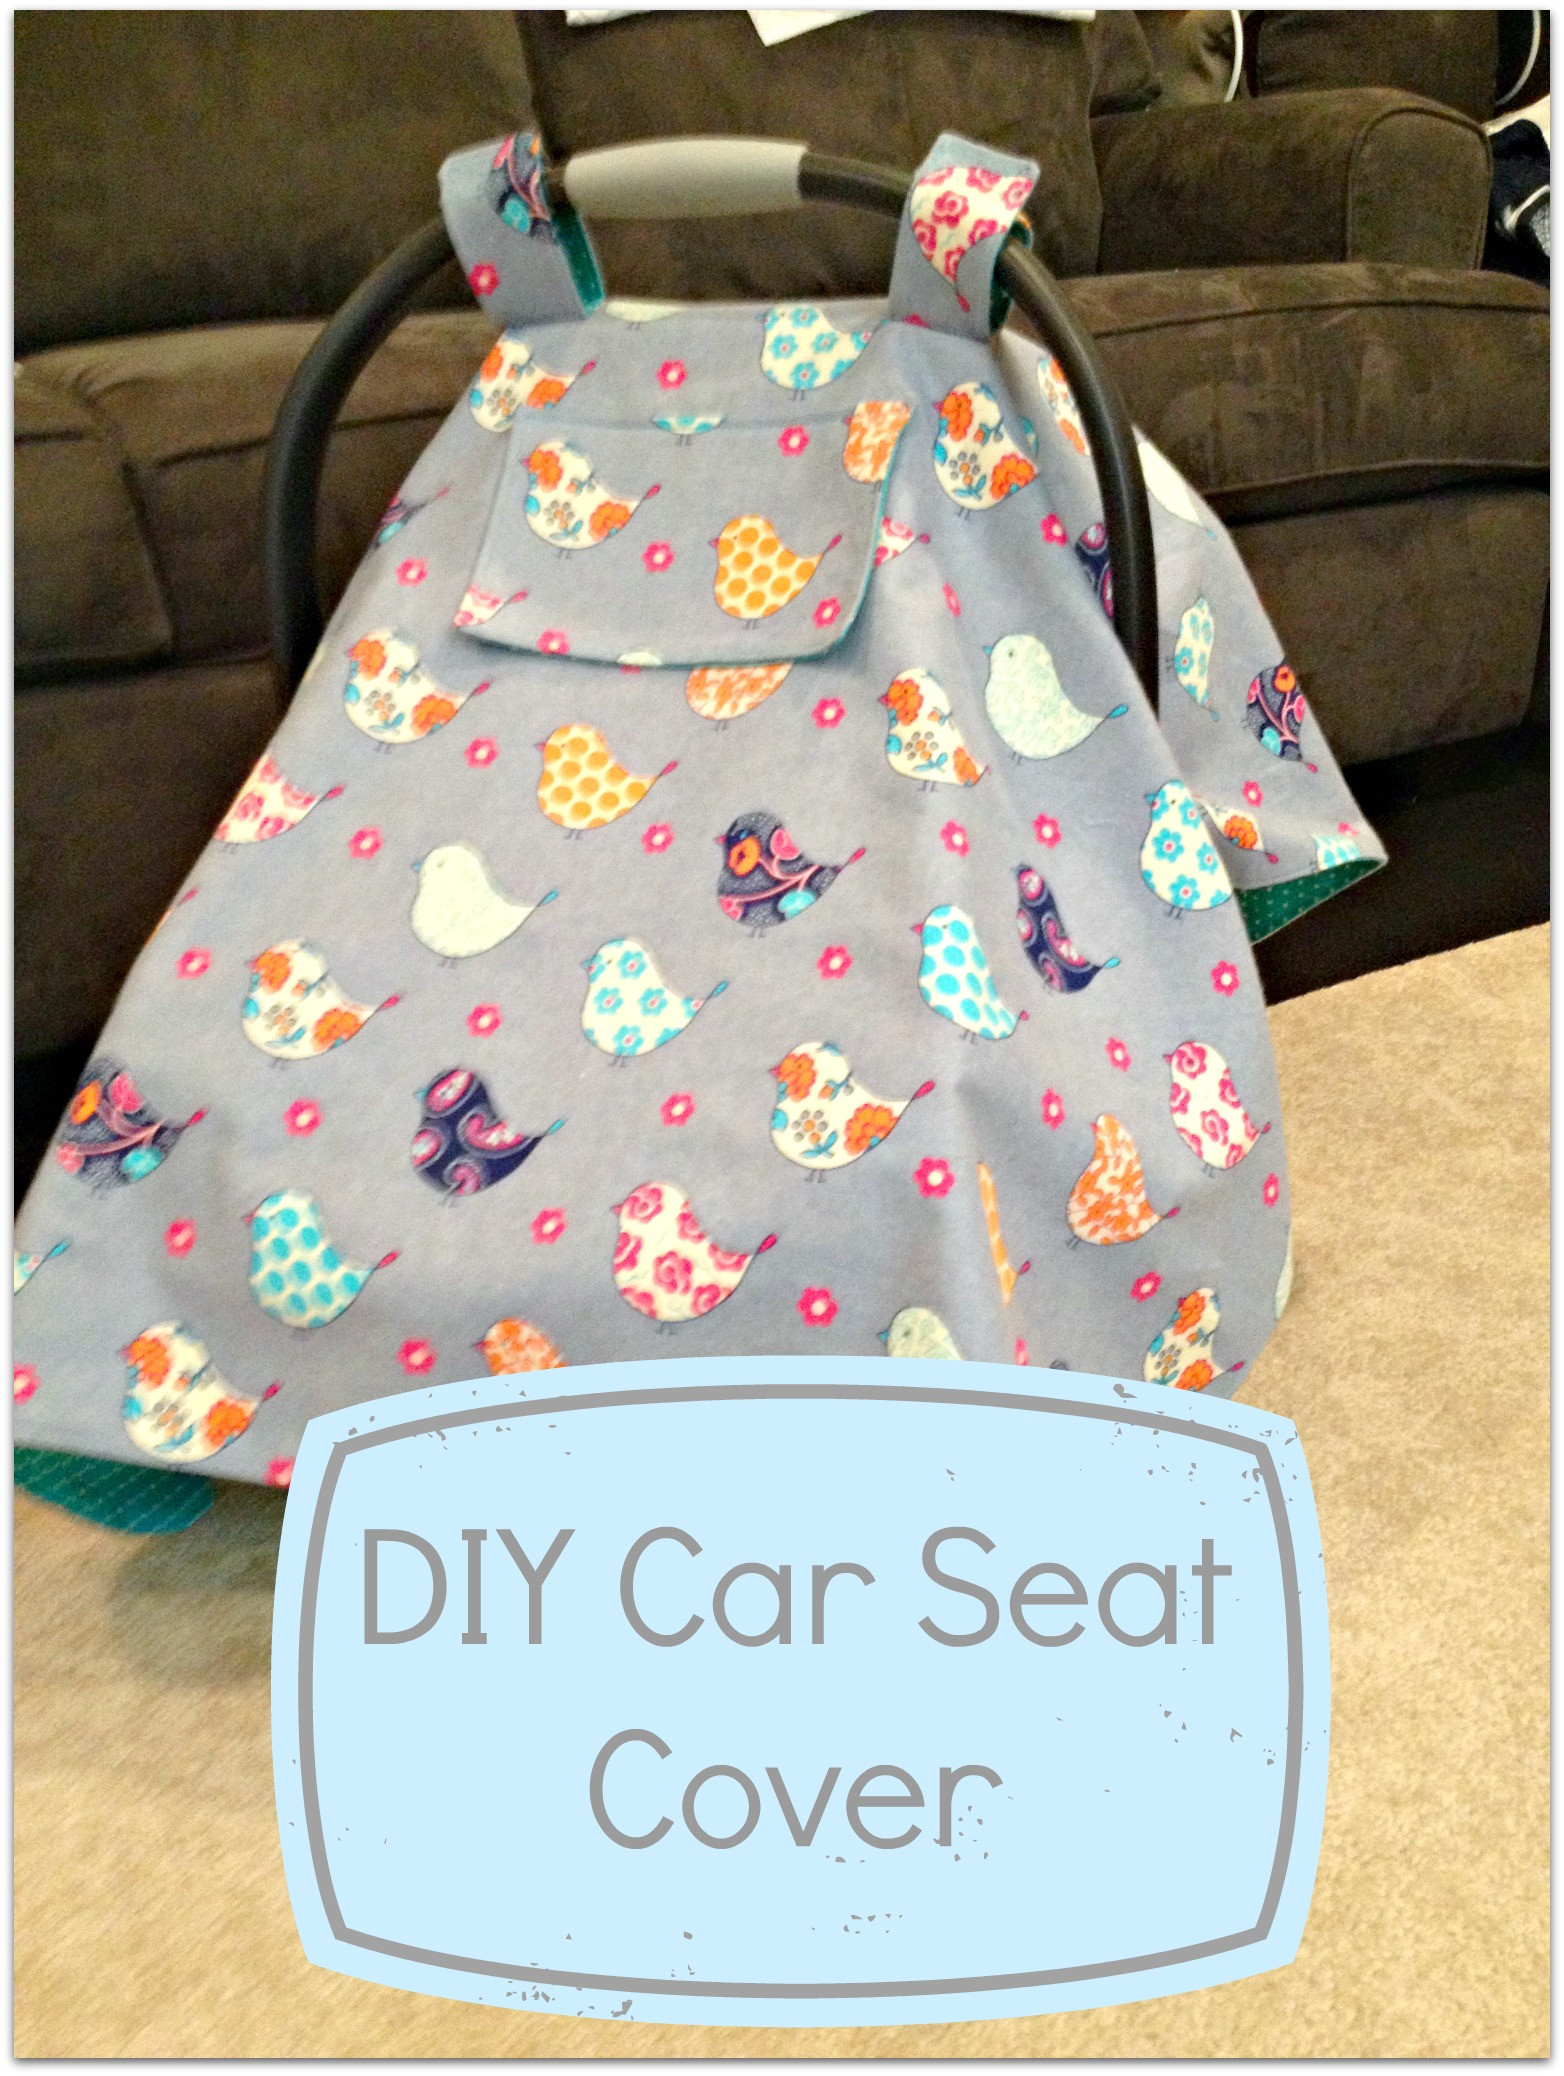 DIY Baby Car Seat Cover
 DIY Car Seat Cover Tutorial